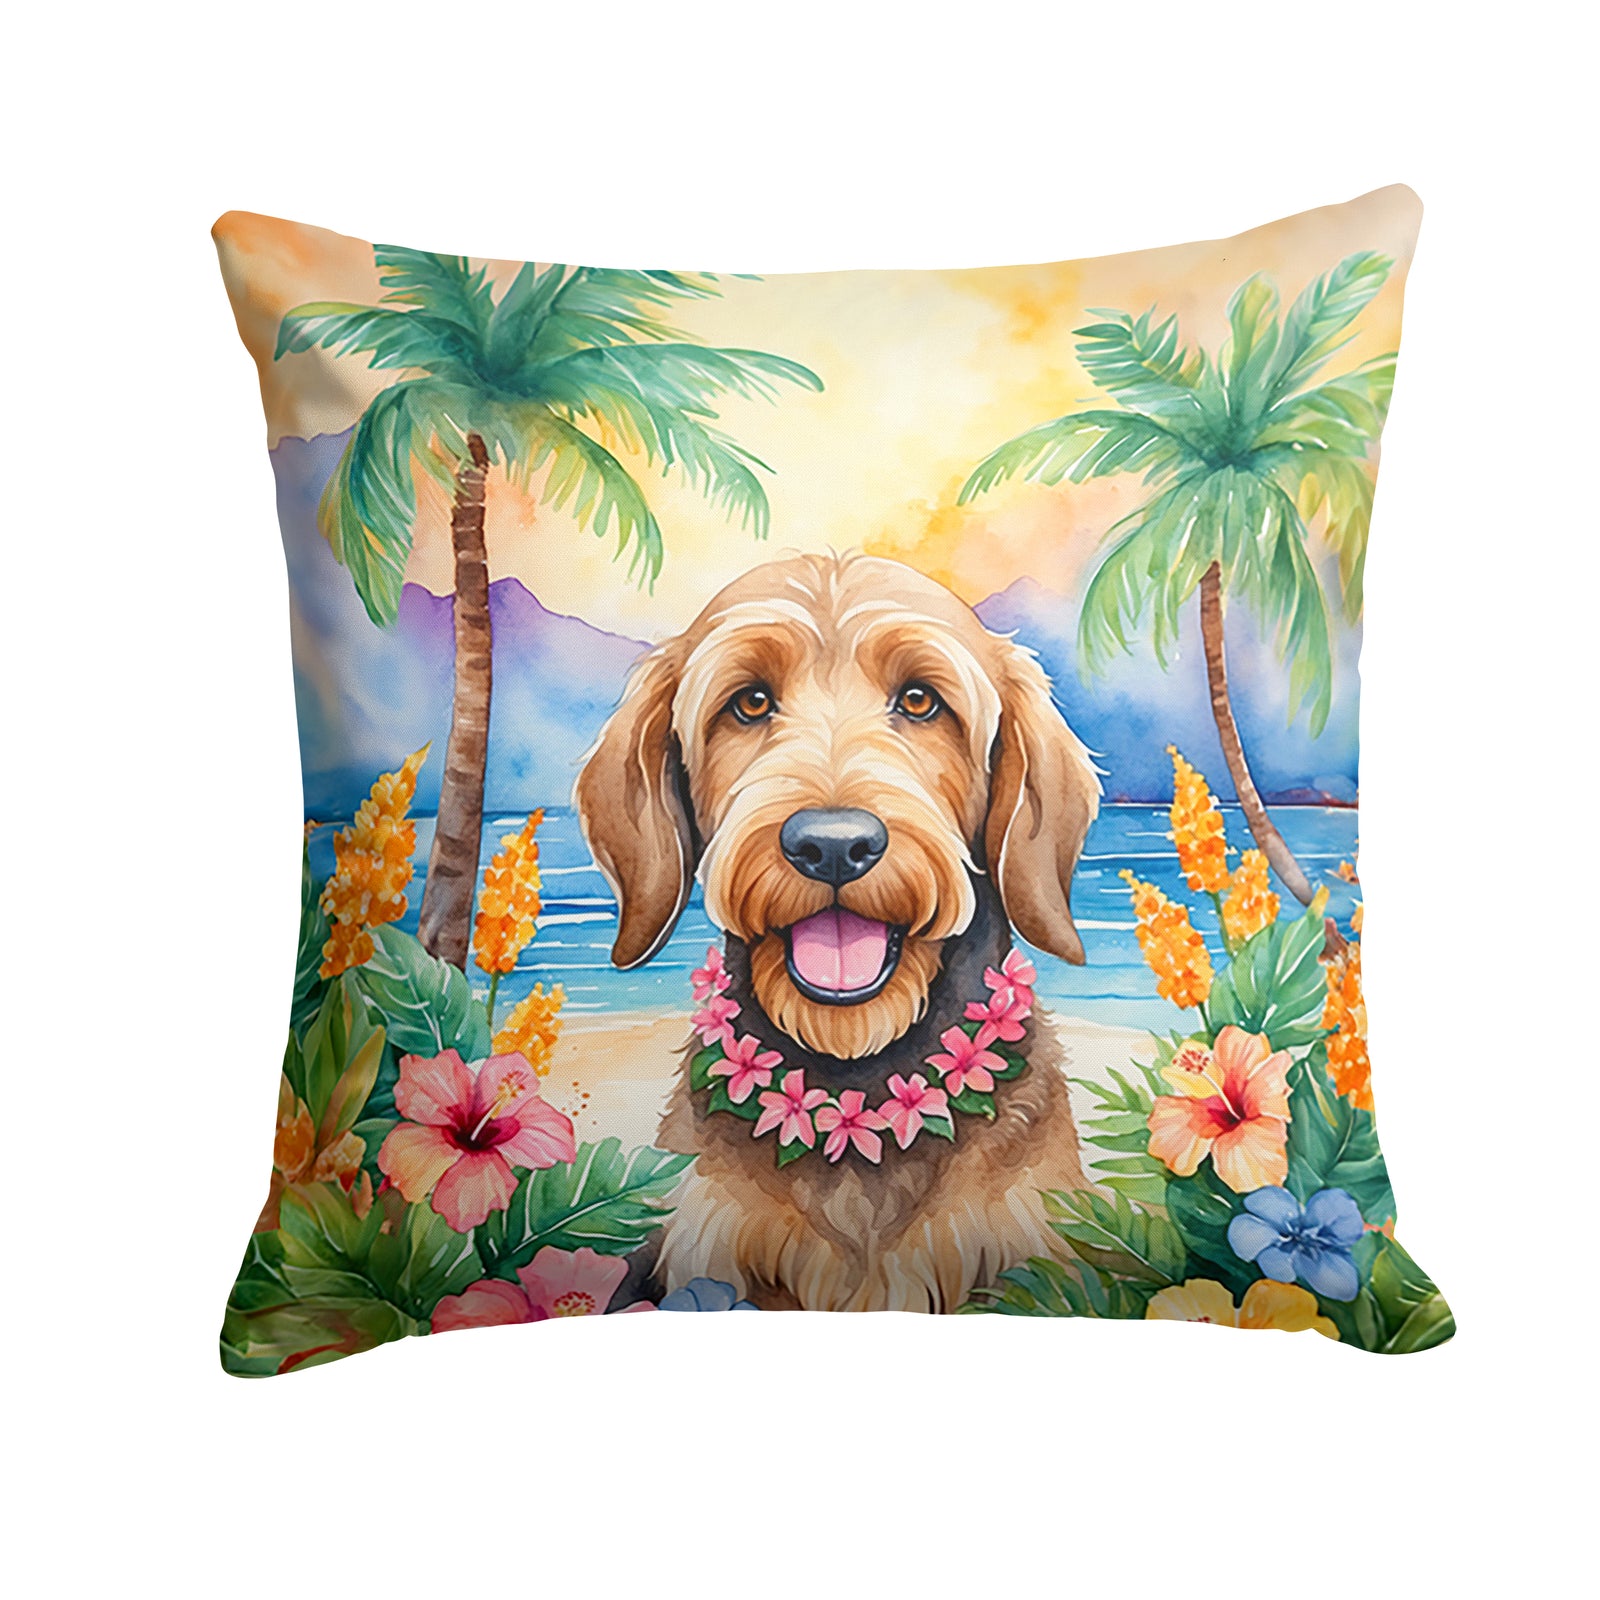 Buy this Otterhound Luau Throw Pillow